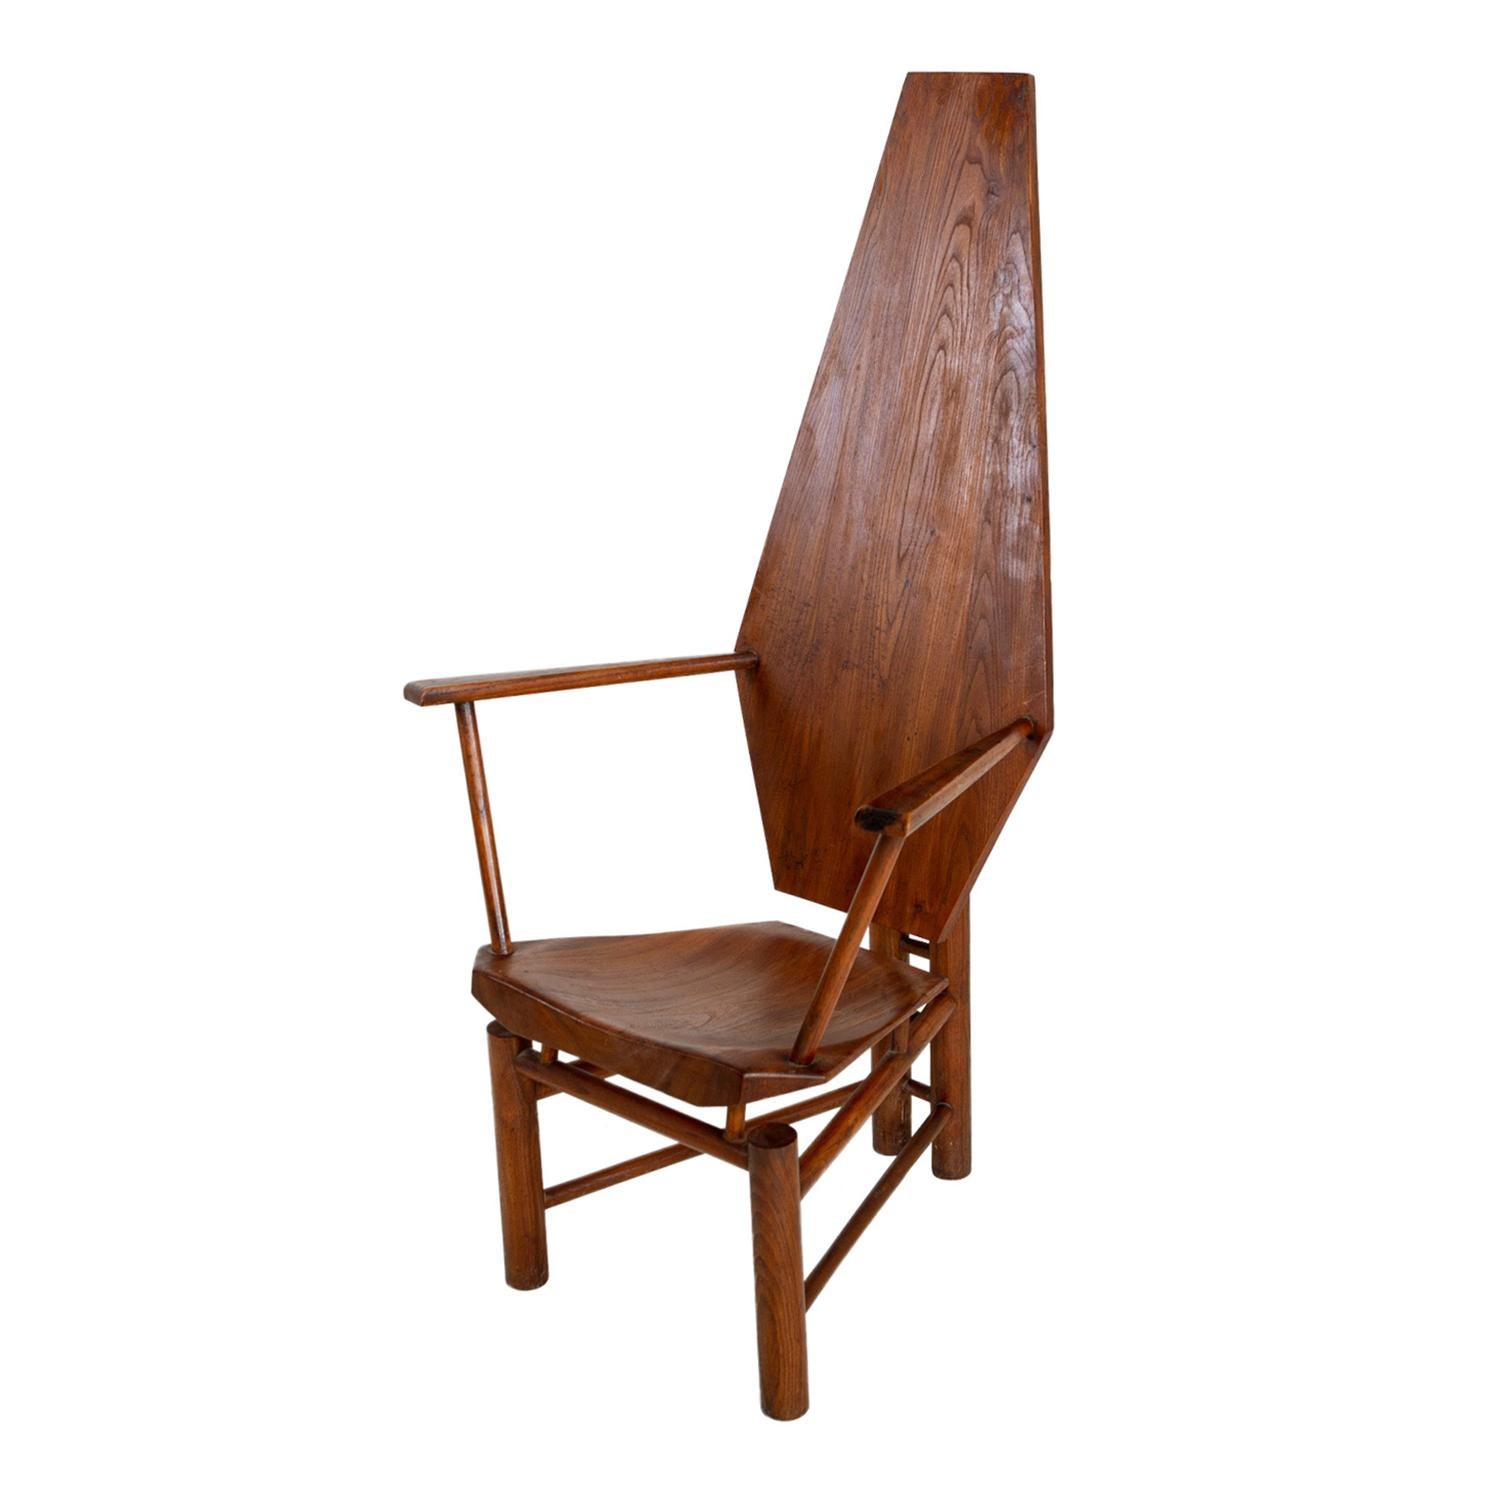 Une seule chaise centrale sculpturale italienne vintage du milieu du siècle, en noyer poli travaillé à la main, en bon état. La chaise latérale est rehaussée d'un dossier hexagonal et d'une base constituée d'entretoises cylindriques en bois,